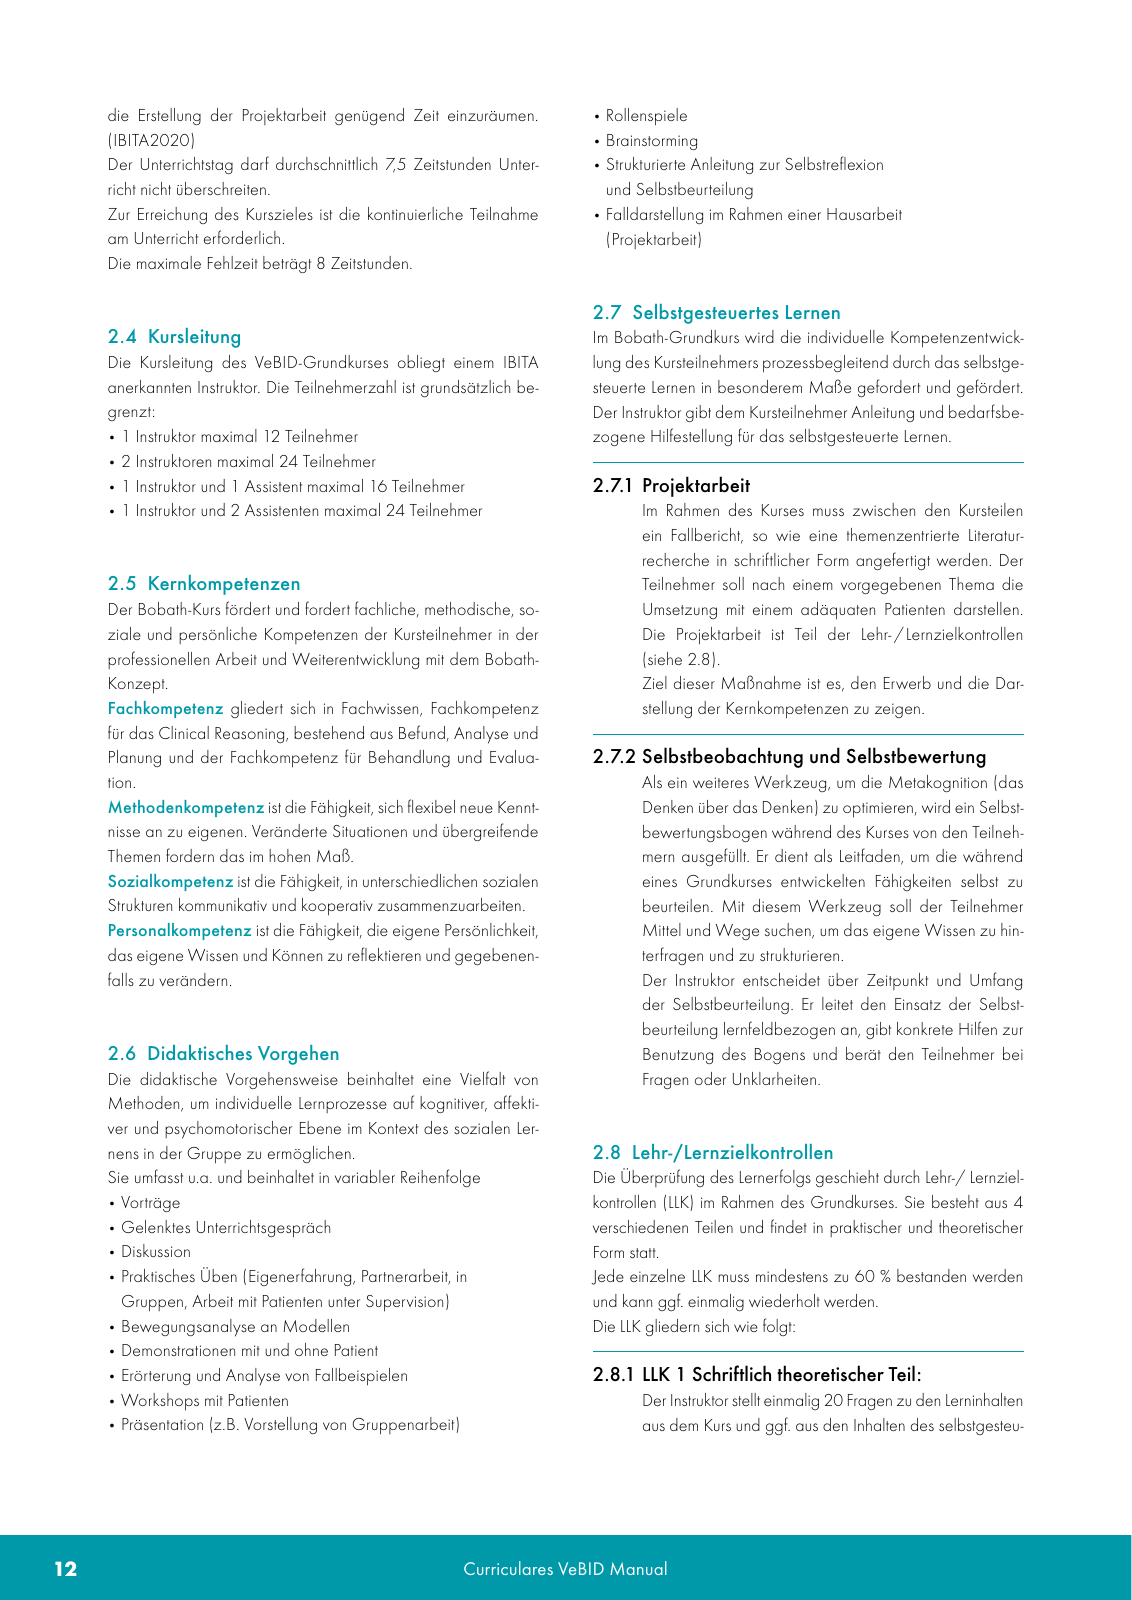 Vorschau VeBID Curriculum 2022 Seite 12